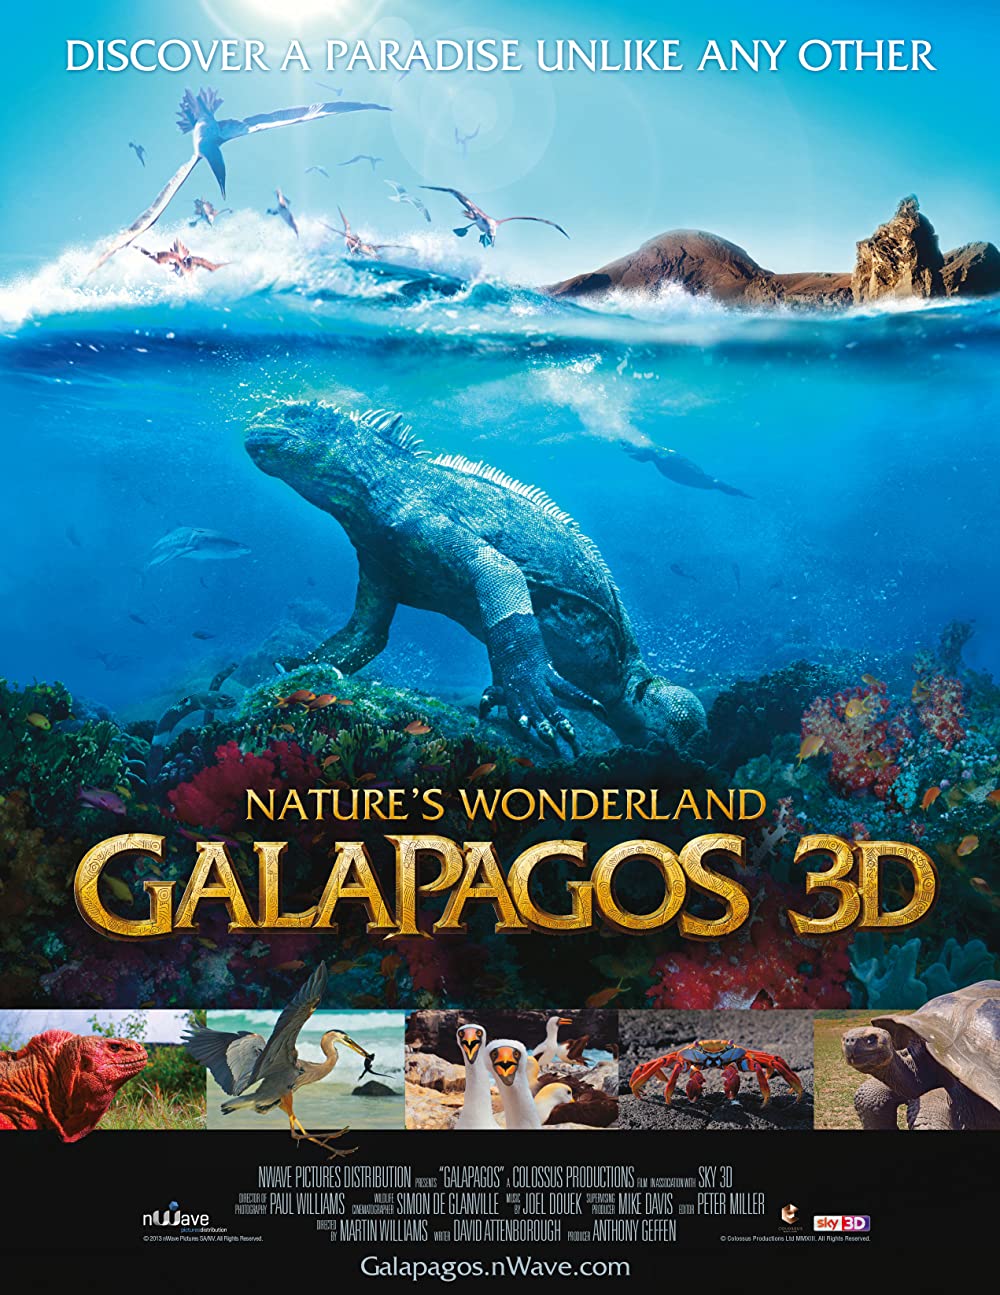 Galapagos - Wunderland der Natur 3D